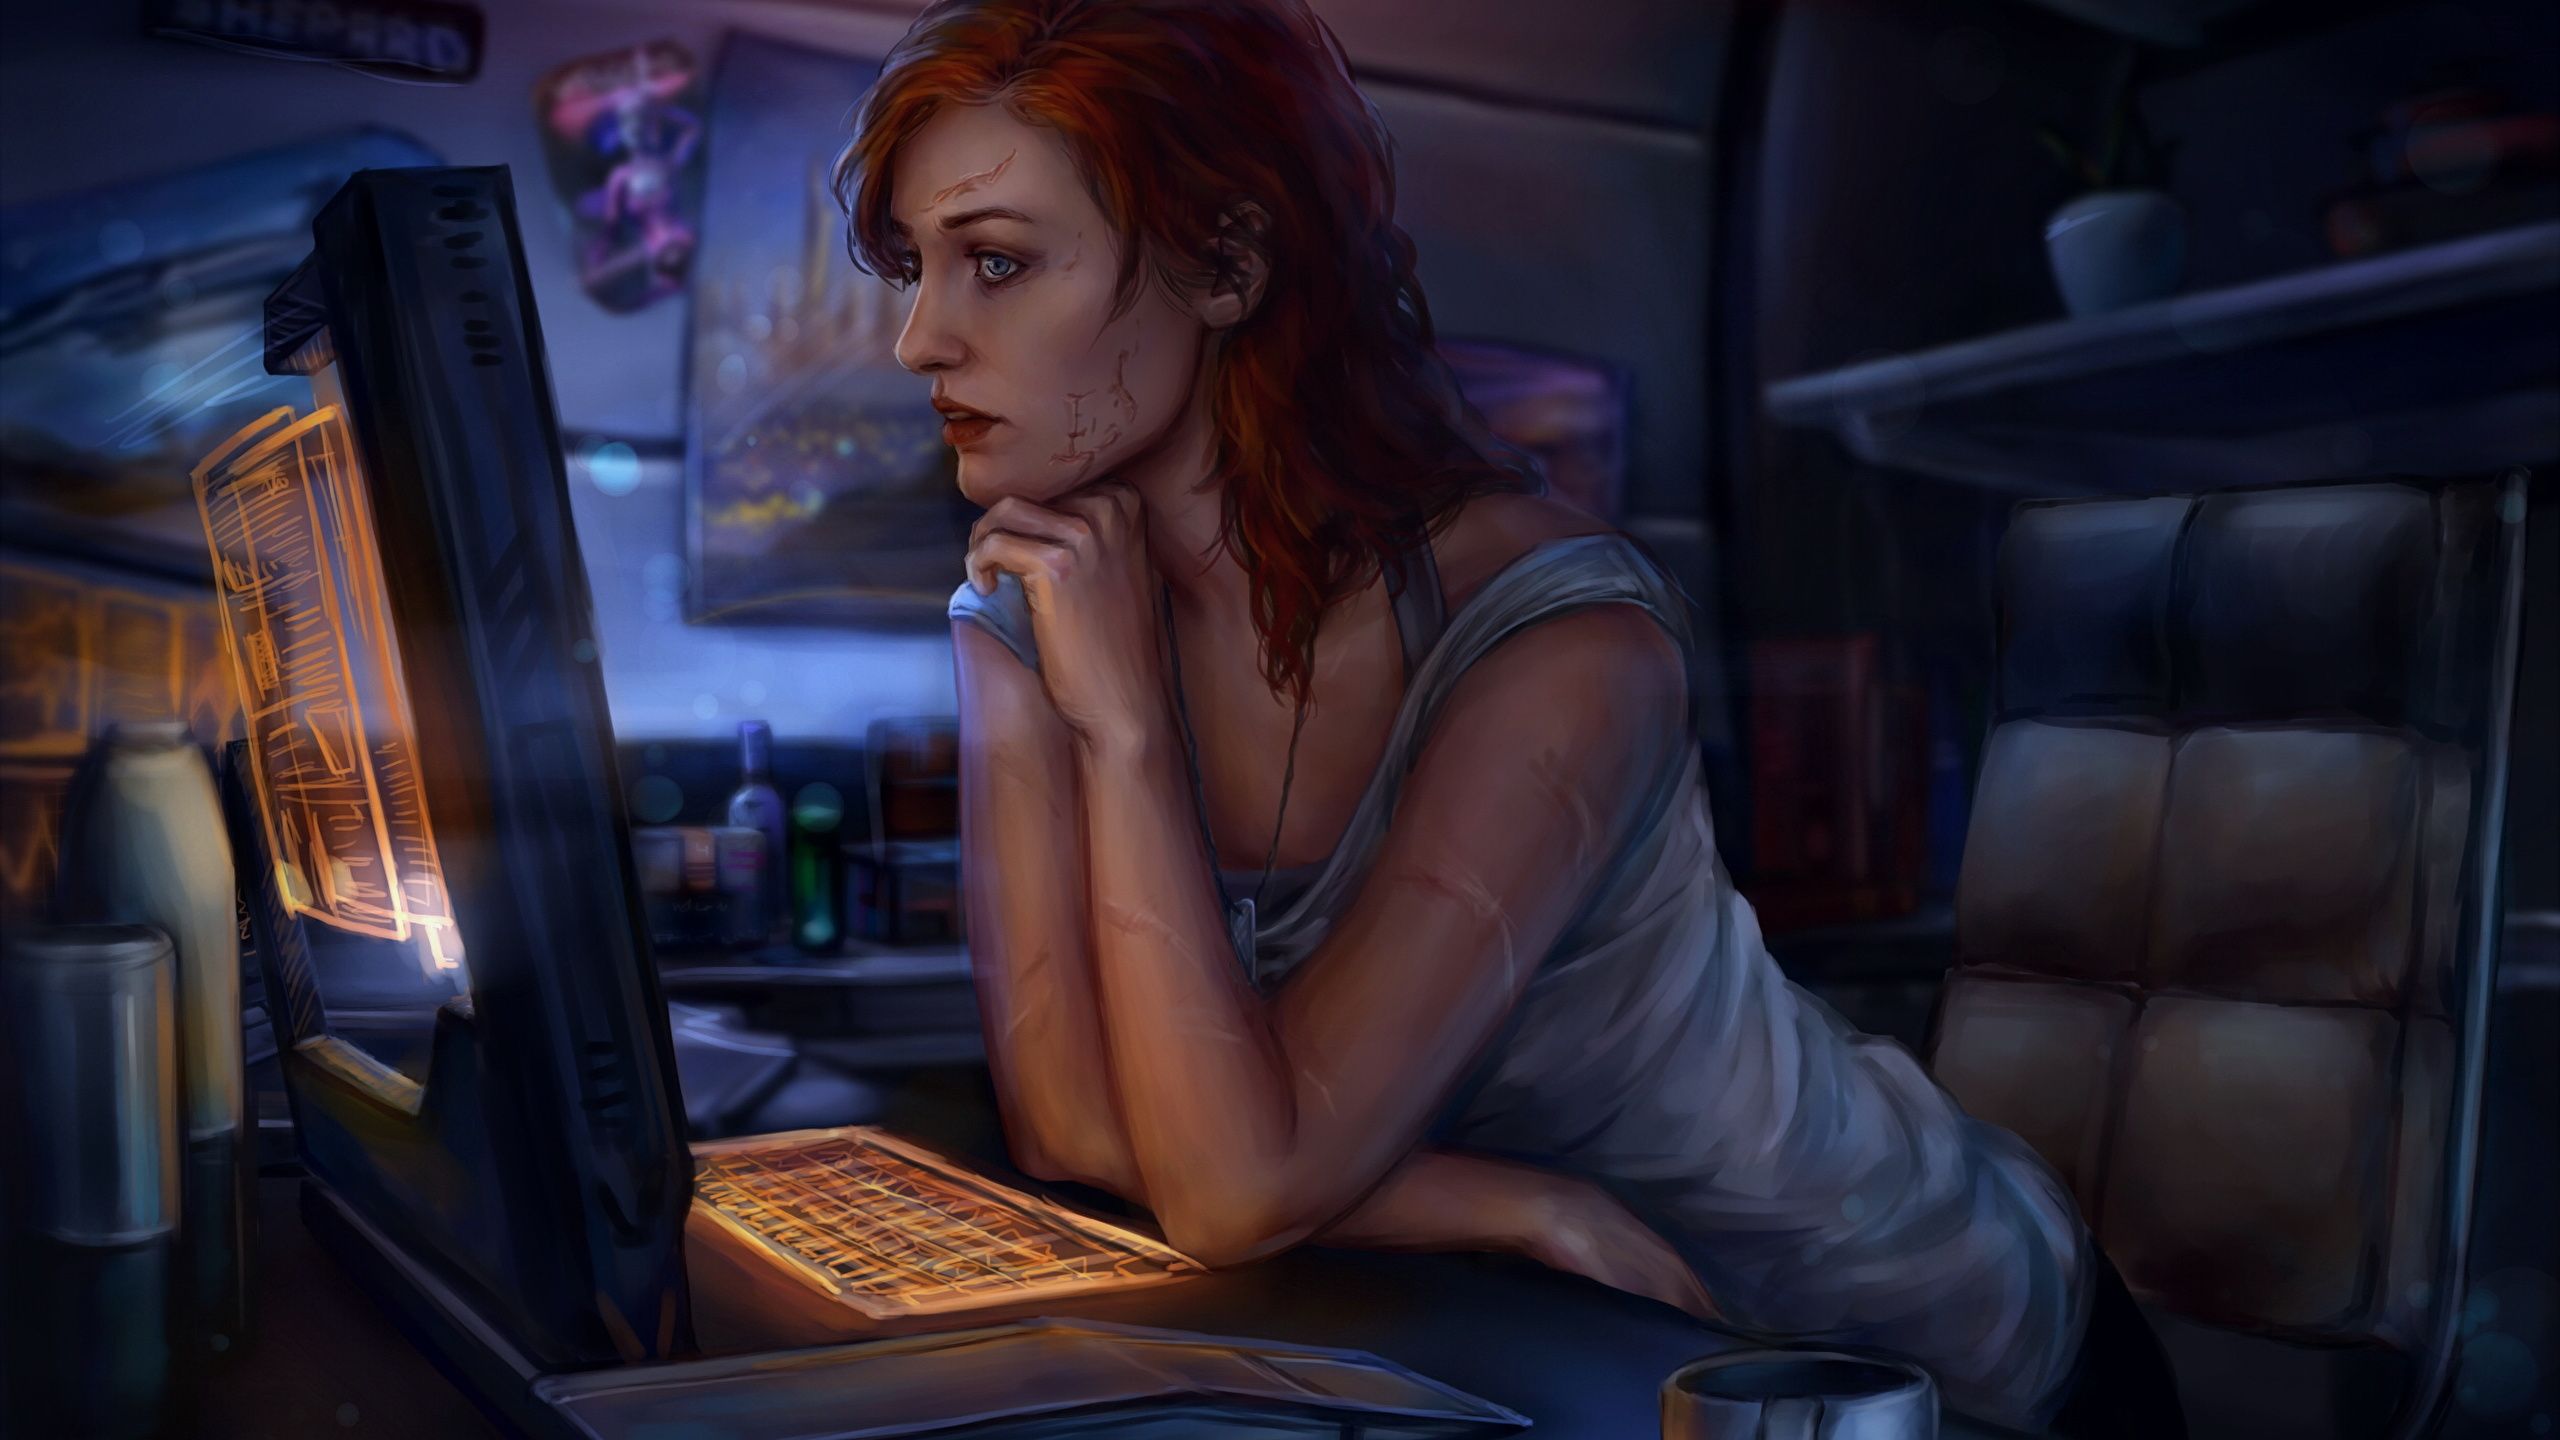 Desktop Wallpaper Mass Effect Redhead girl Girls vdeo 2560x1440